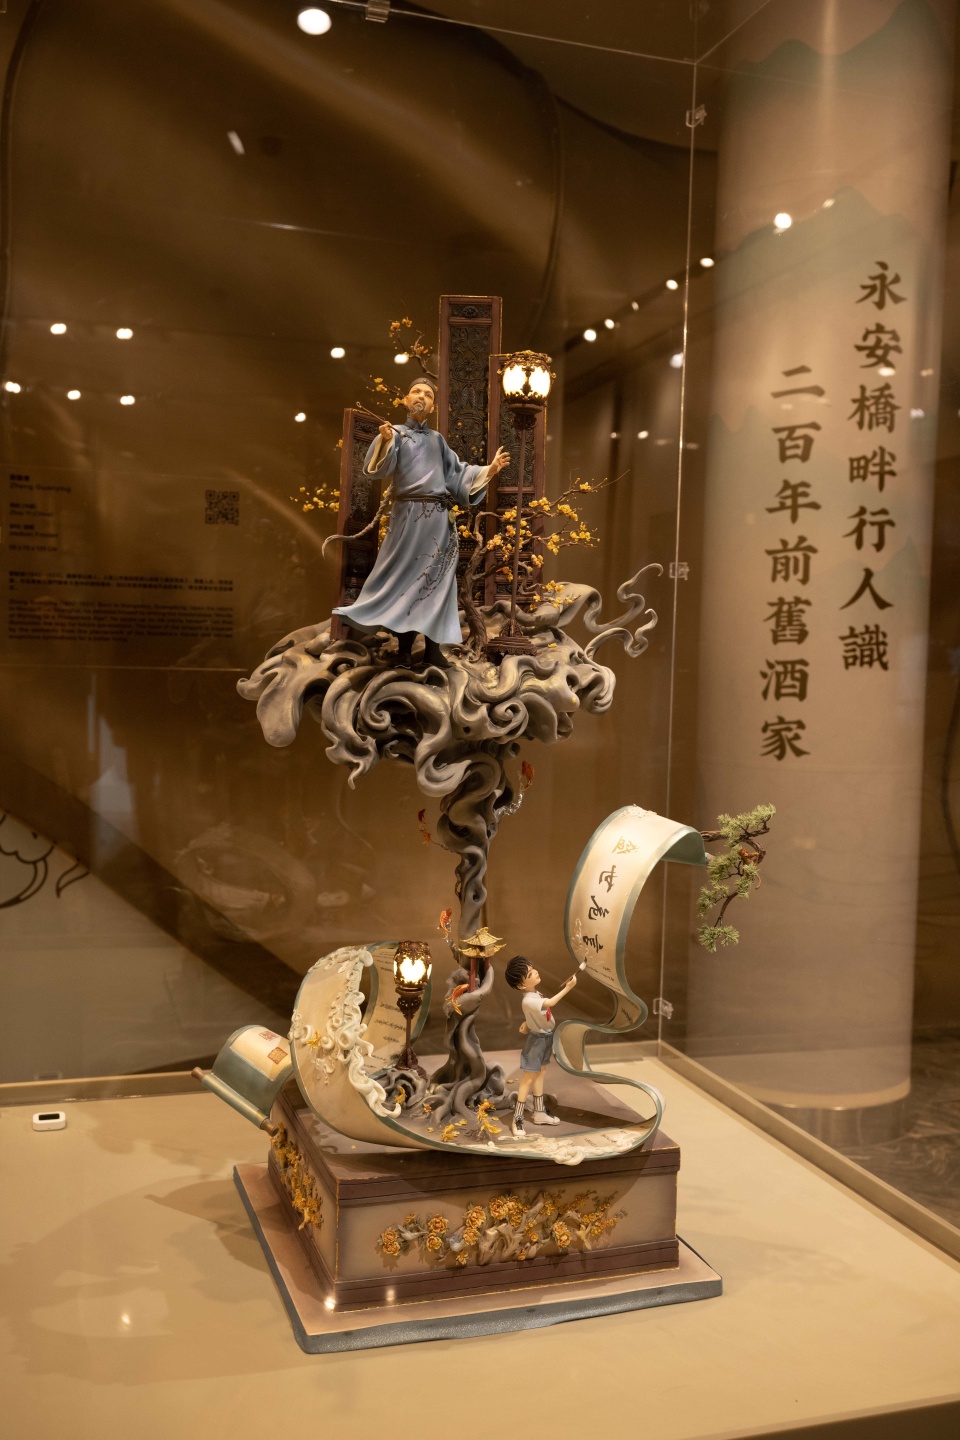 「中国糖王」周毅翻糖雕塑展澳门举行-用蛋糕艺术展现中华文化